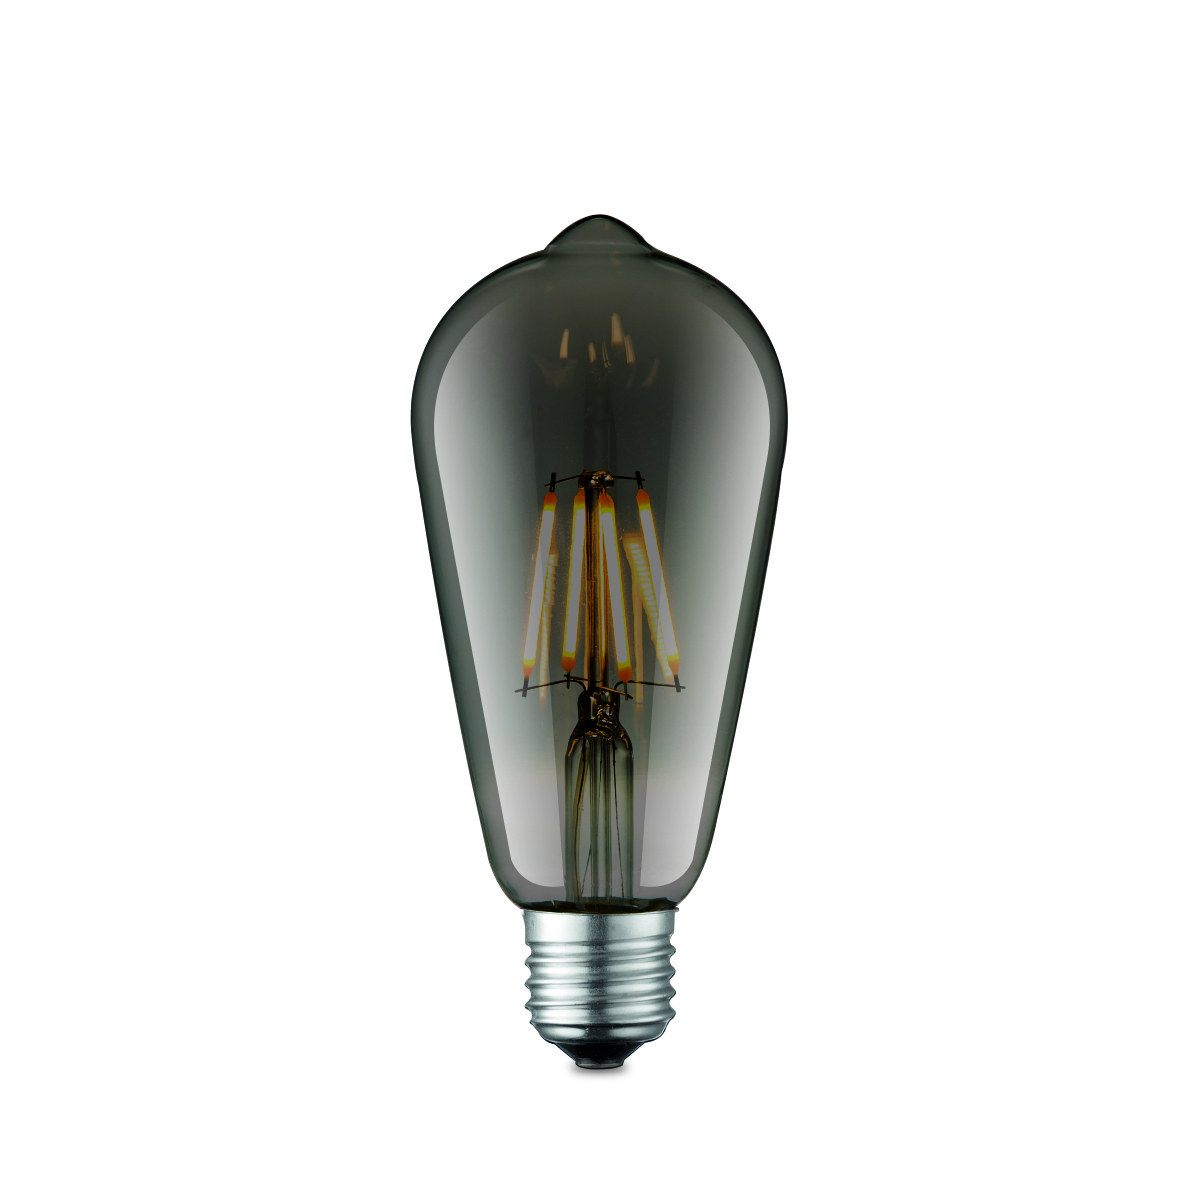 Tangla lighting - TLB-8001-04TM - LED Light Bulb Deco filament - ST64 4W titanium - dimmable - E27